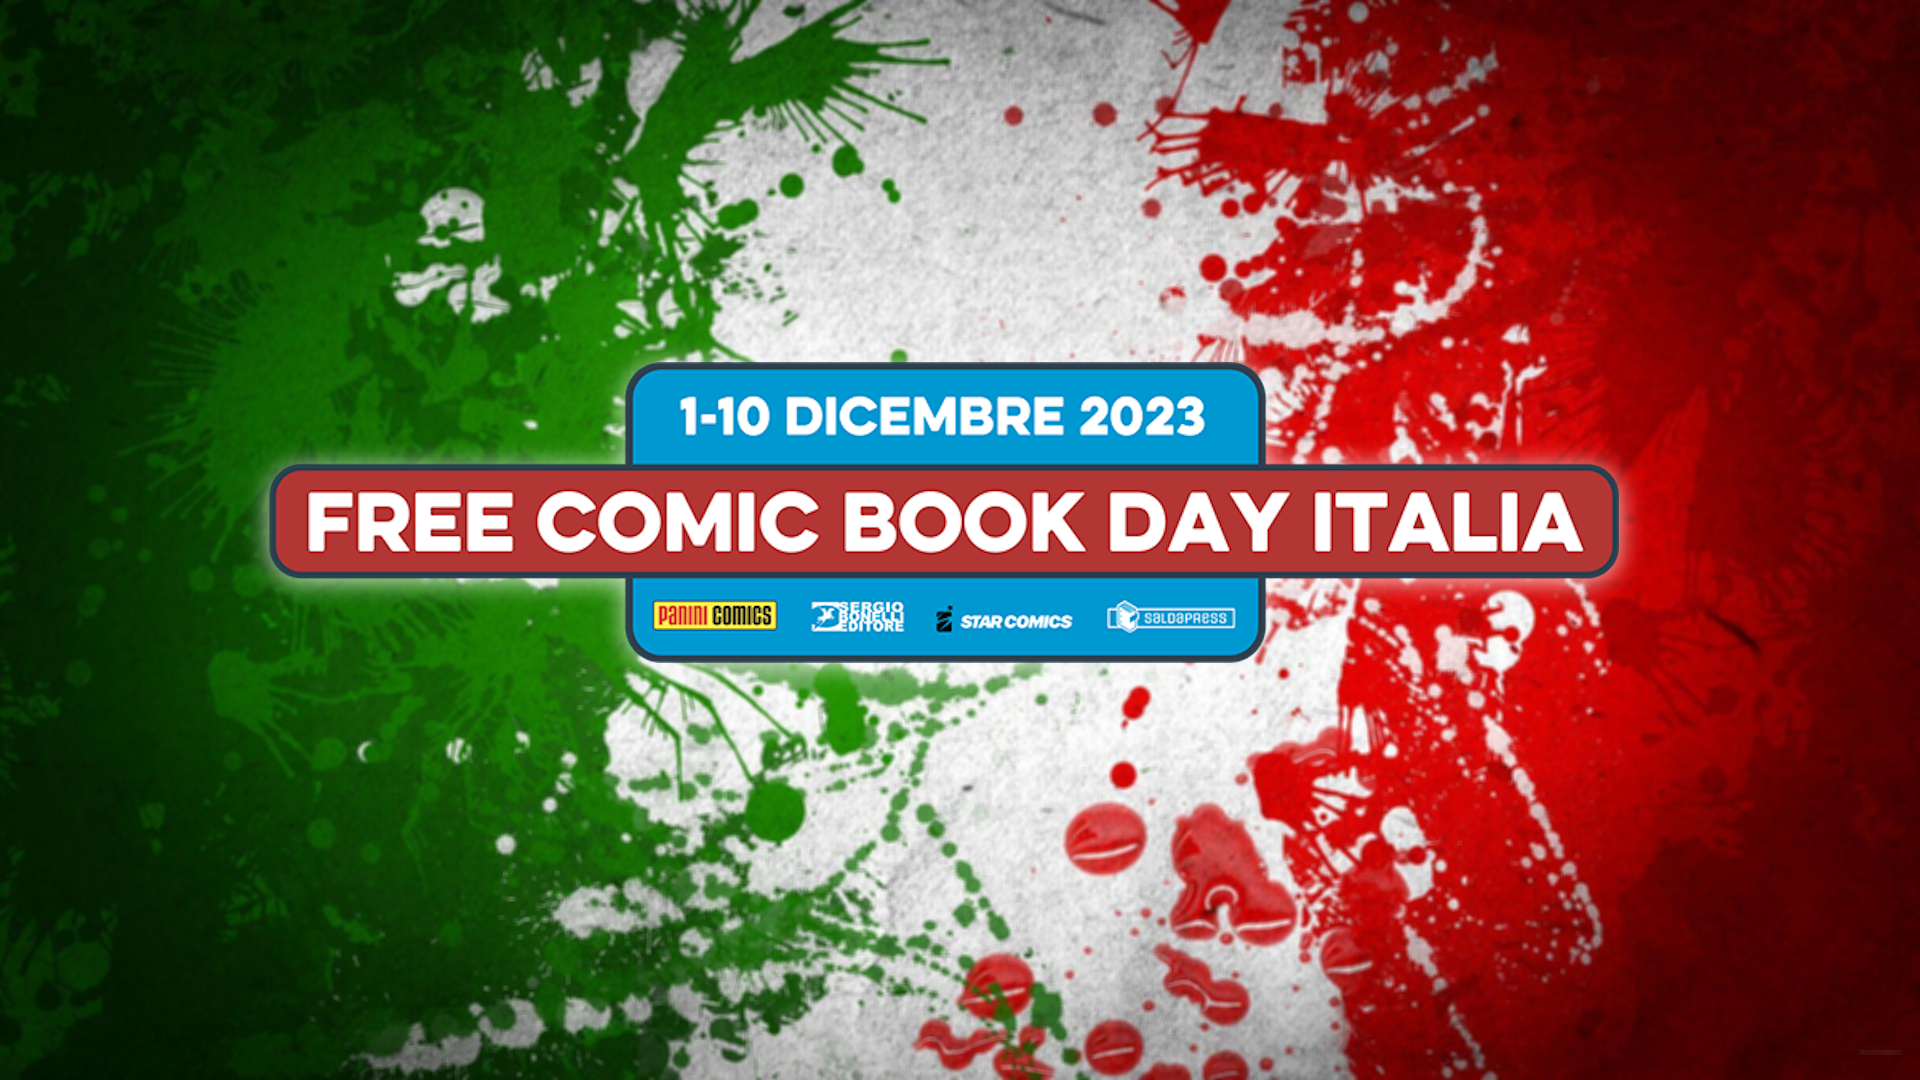 L’ottava edizione del Free Comic Book Day Italia: dall’1 al 10 dicembre 2023